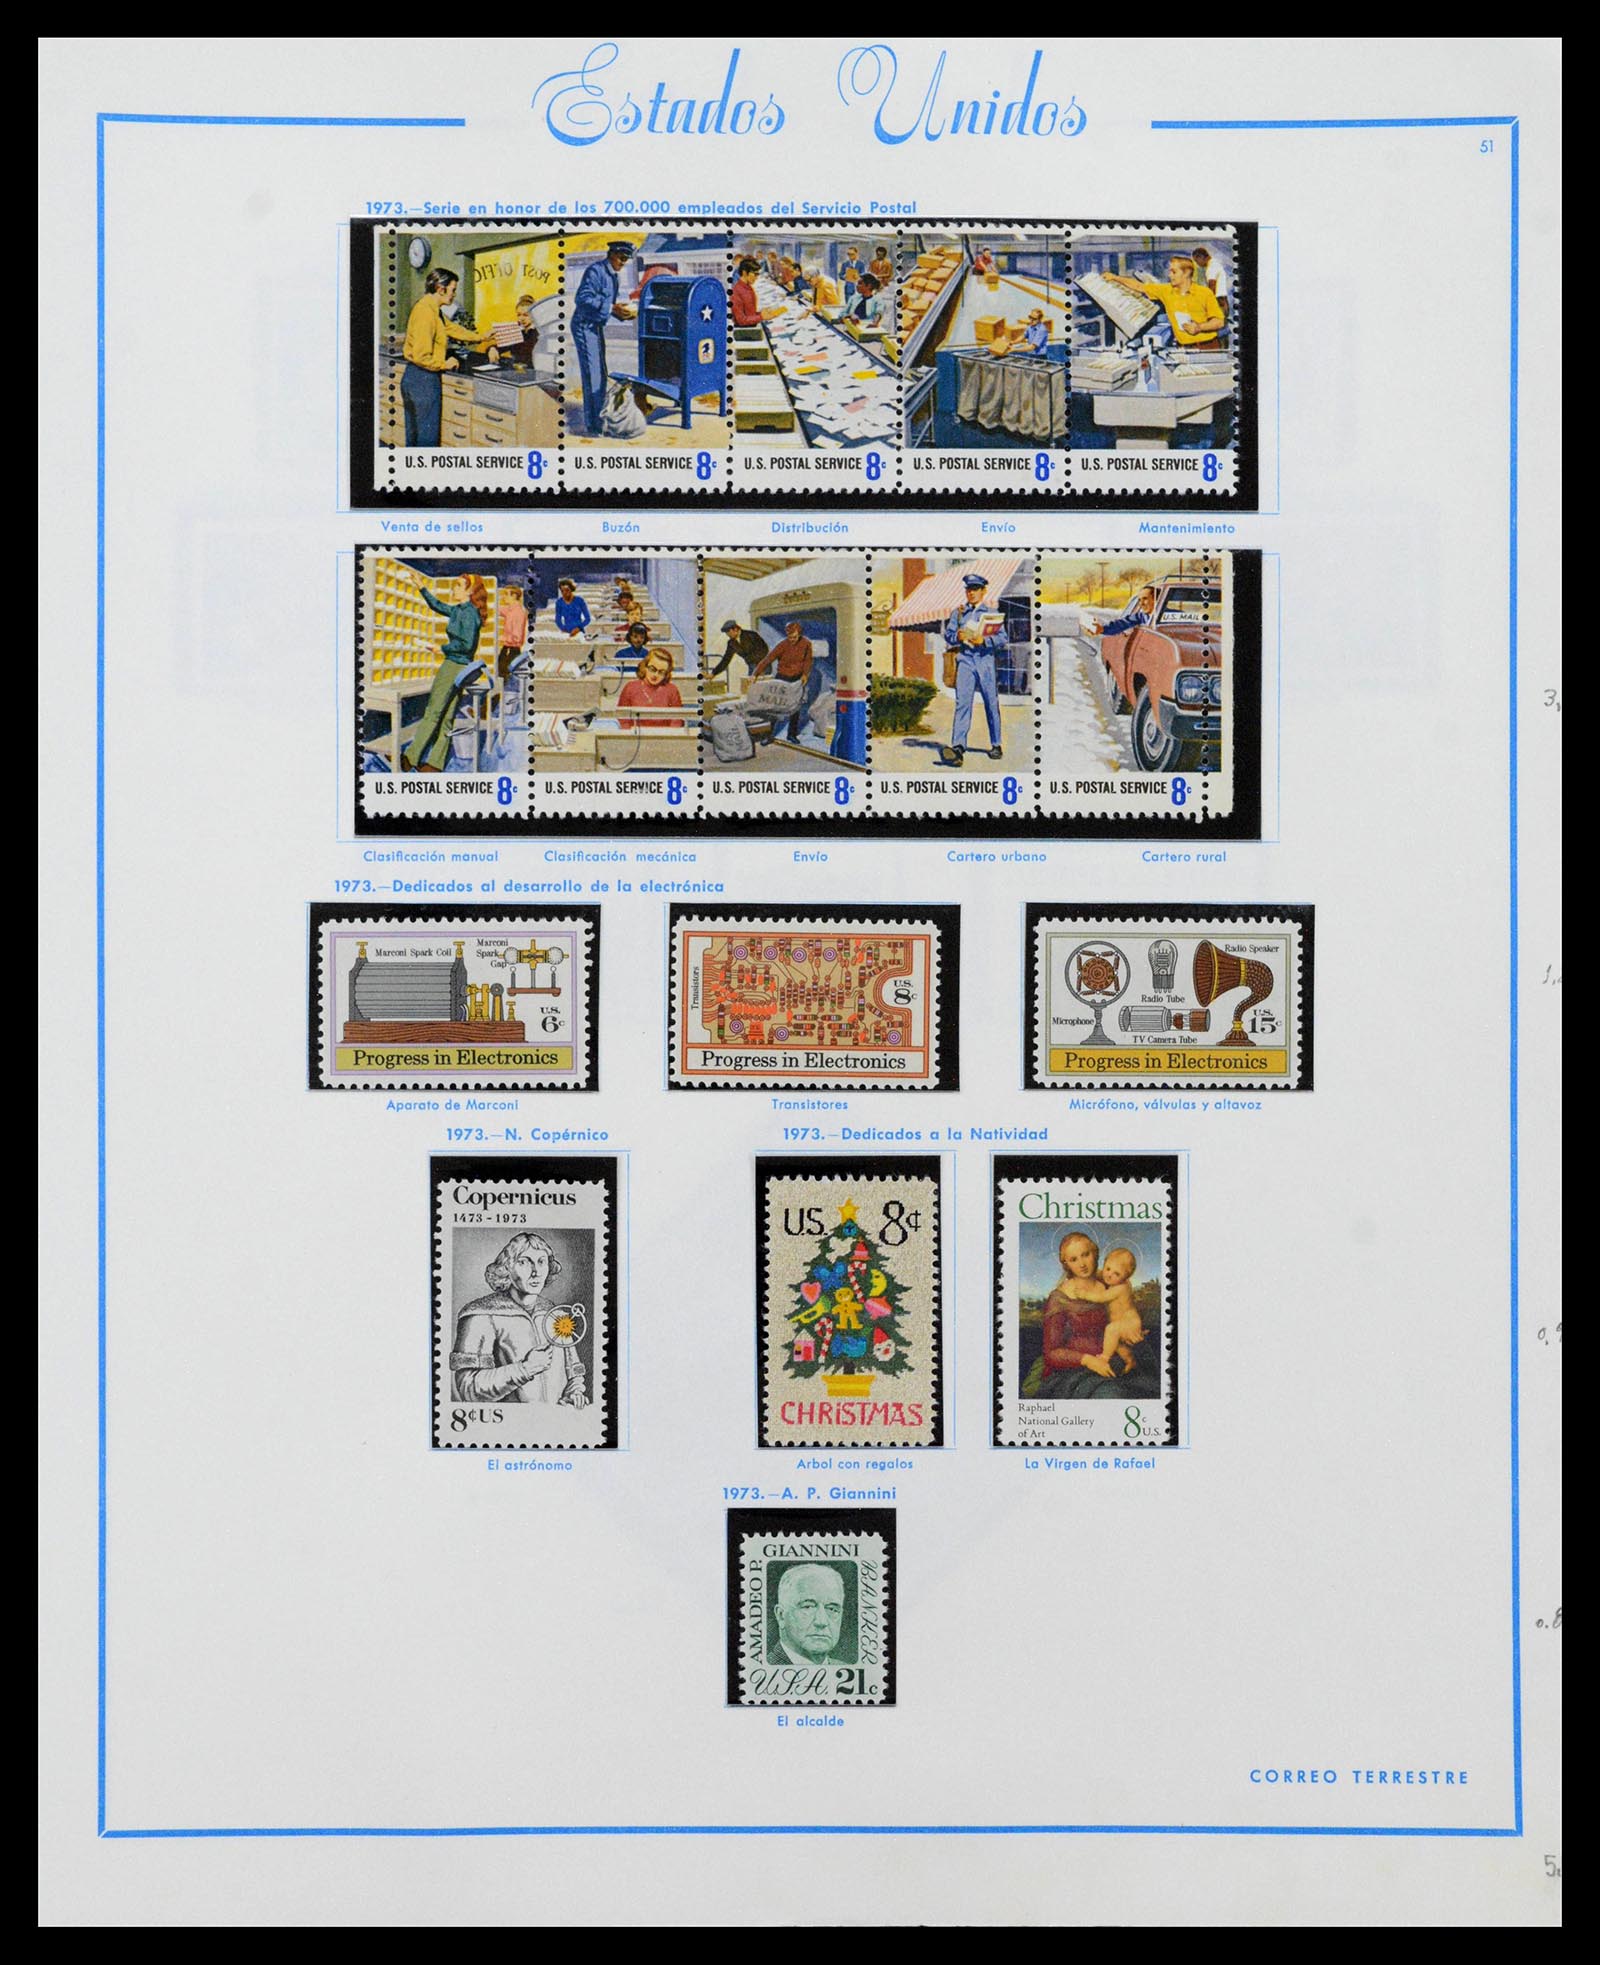 39190 0056 - Stamp collection 39190 USA 1851-1975.